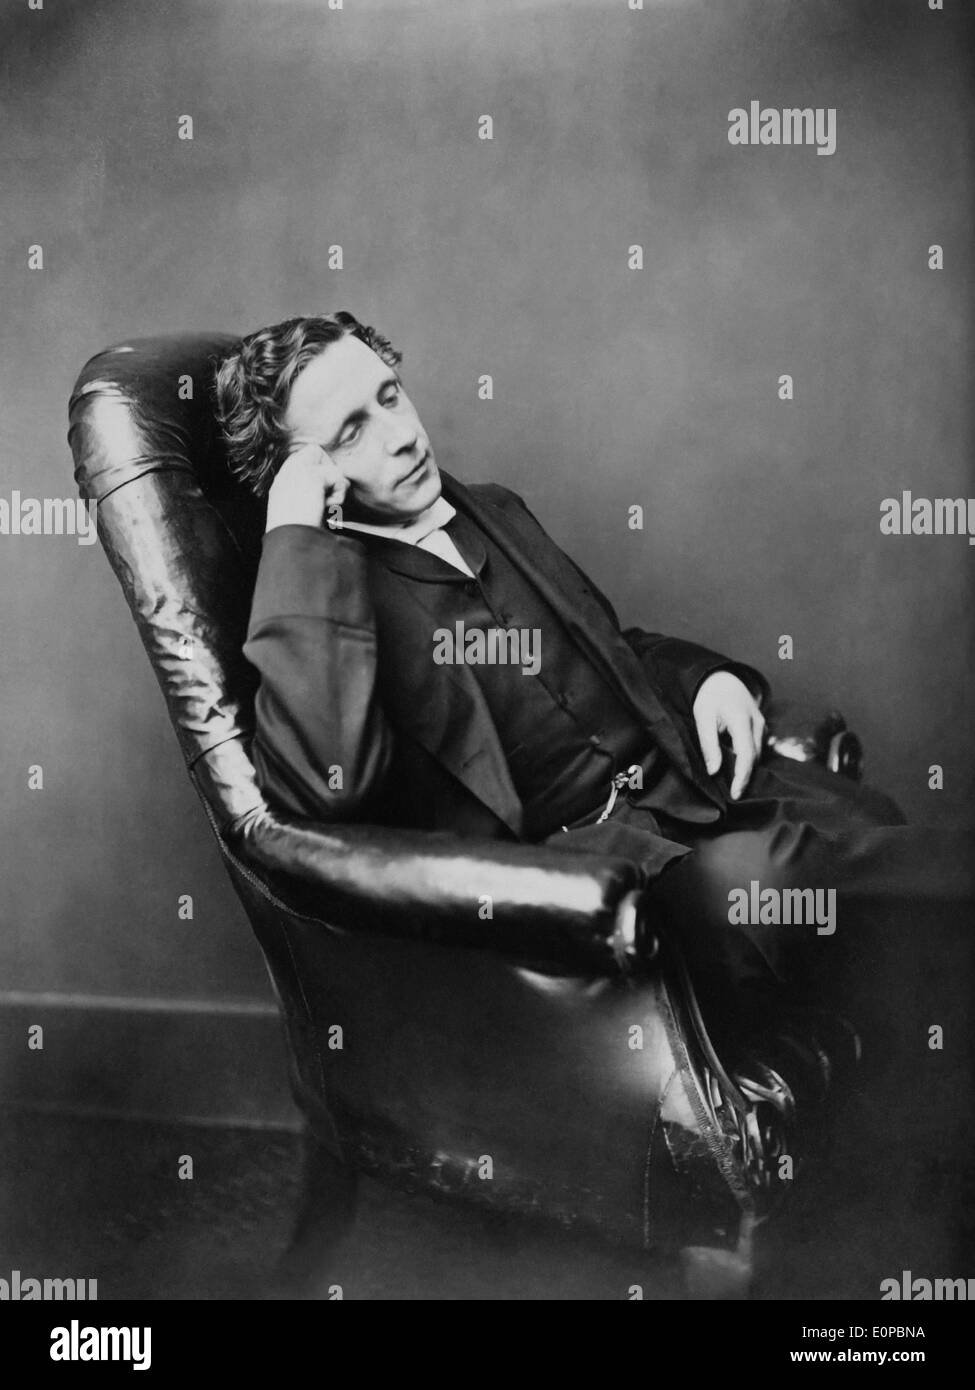 Lewis Carroll (1832-1898), autor inglés, matemático y fotógrafo. Nacido Charles Lutwidge Dodgson, que adoptó el nombre de pluma de publicación de Lewis Carroll Alicia en el país de las maravillas en 1865. Foto de stock